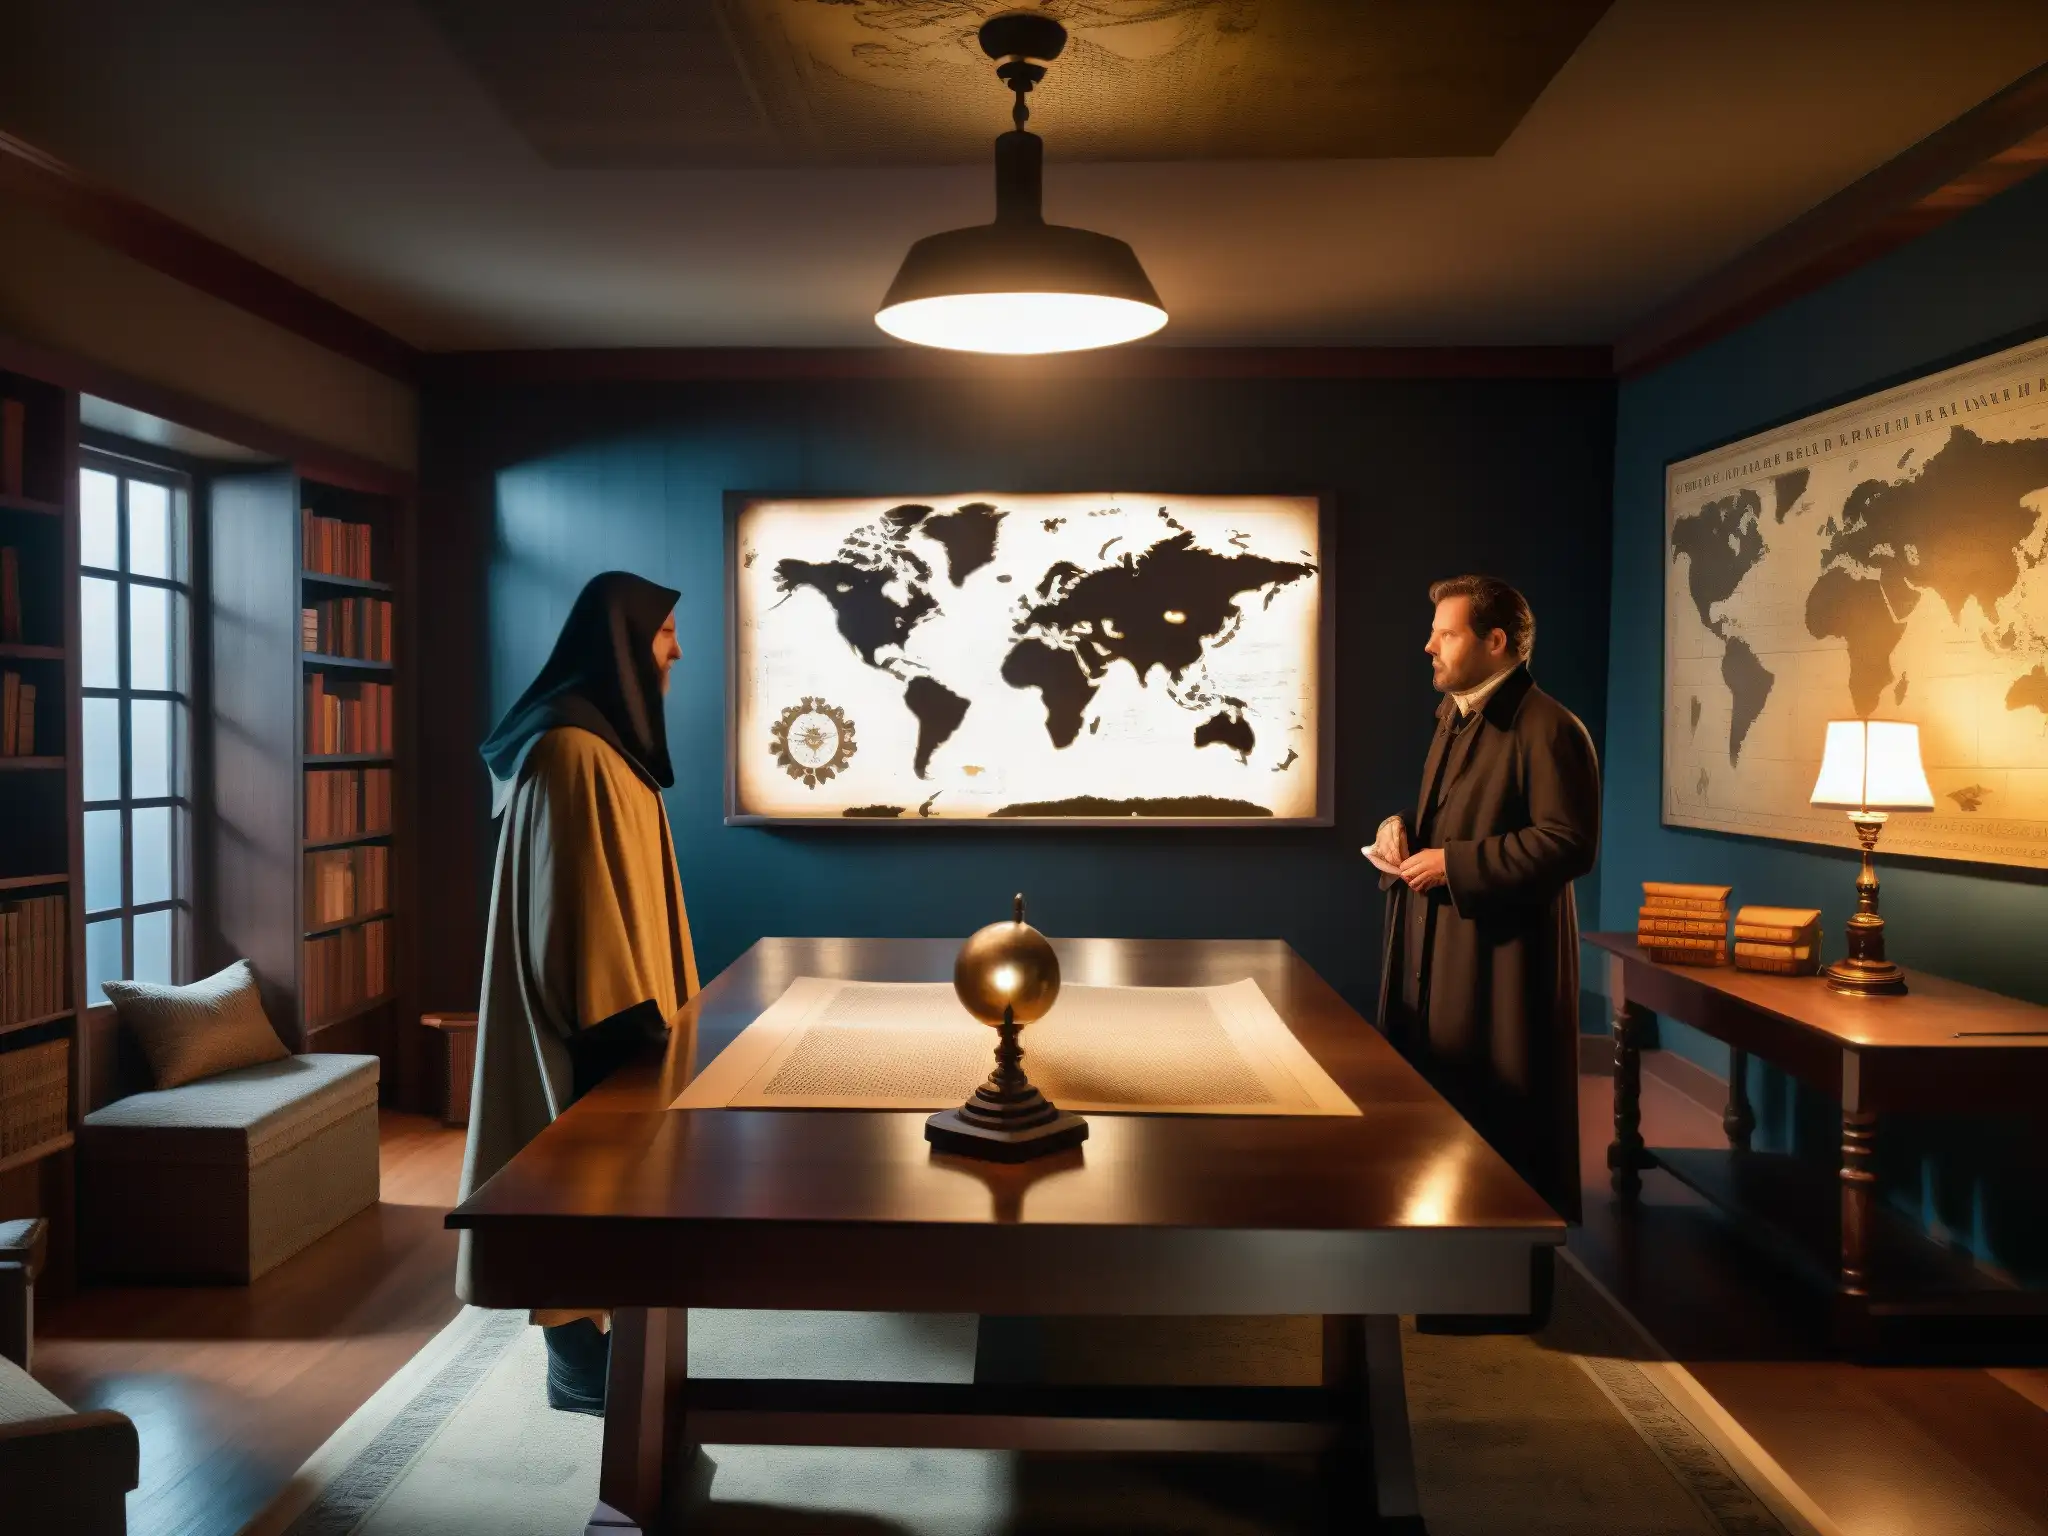 En una habitación tenue, una mesa de madera está cubierta de documentos, libros antiguos y un mapa del mundo